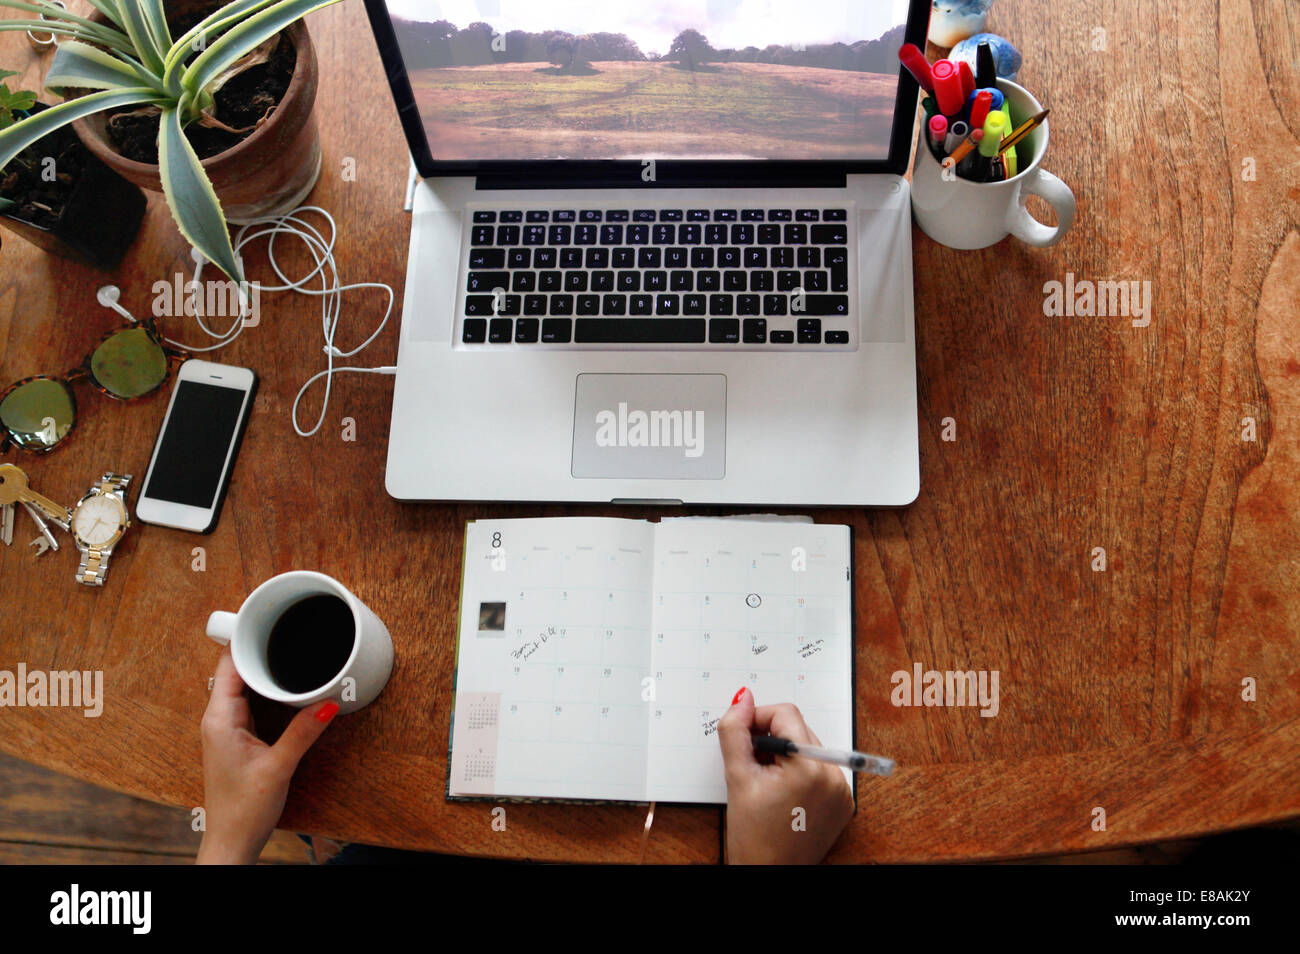 Persona scrivendo nel diario con il laptop sulla scrivania Foto Stock